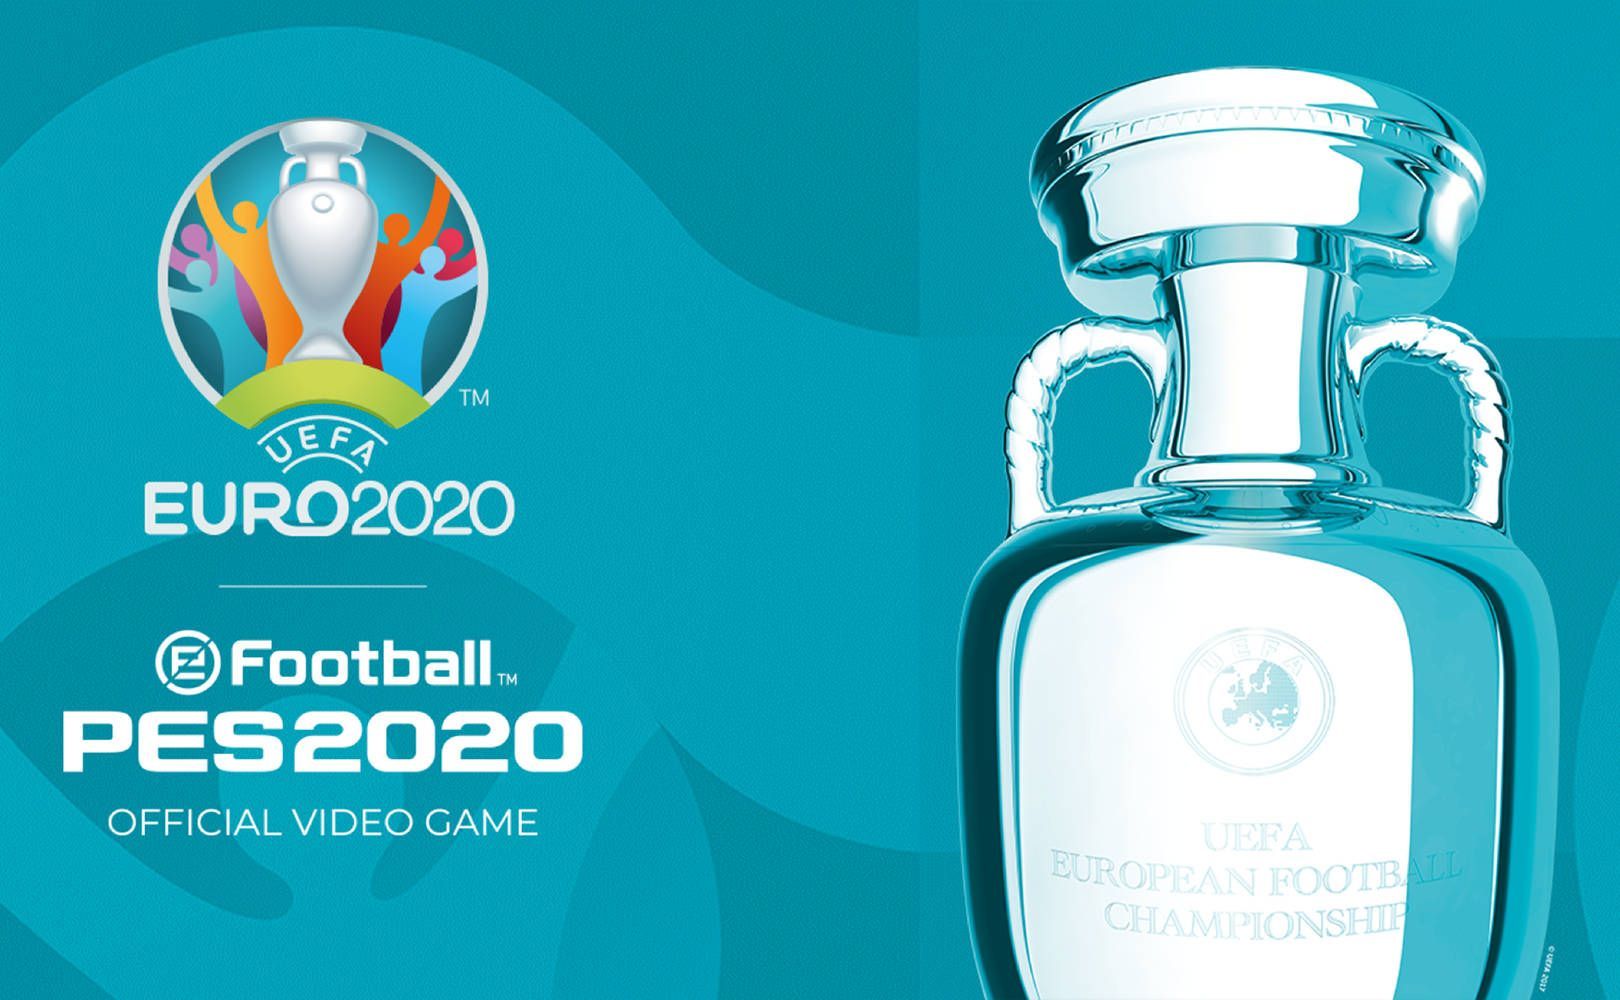 EURO 2020 w PES 20